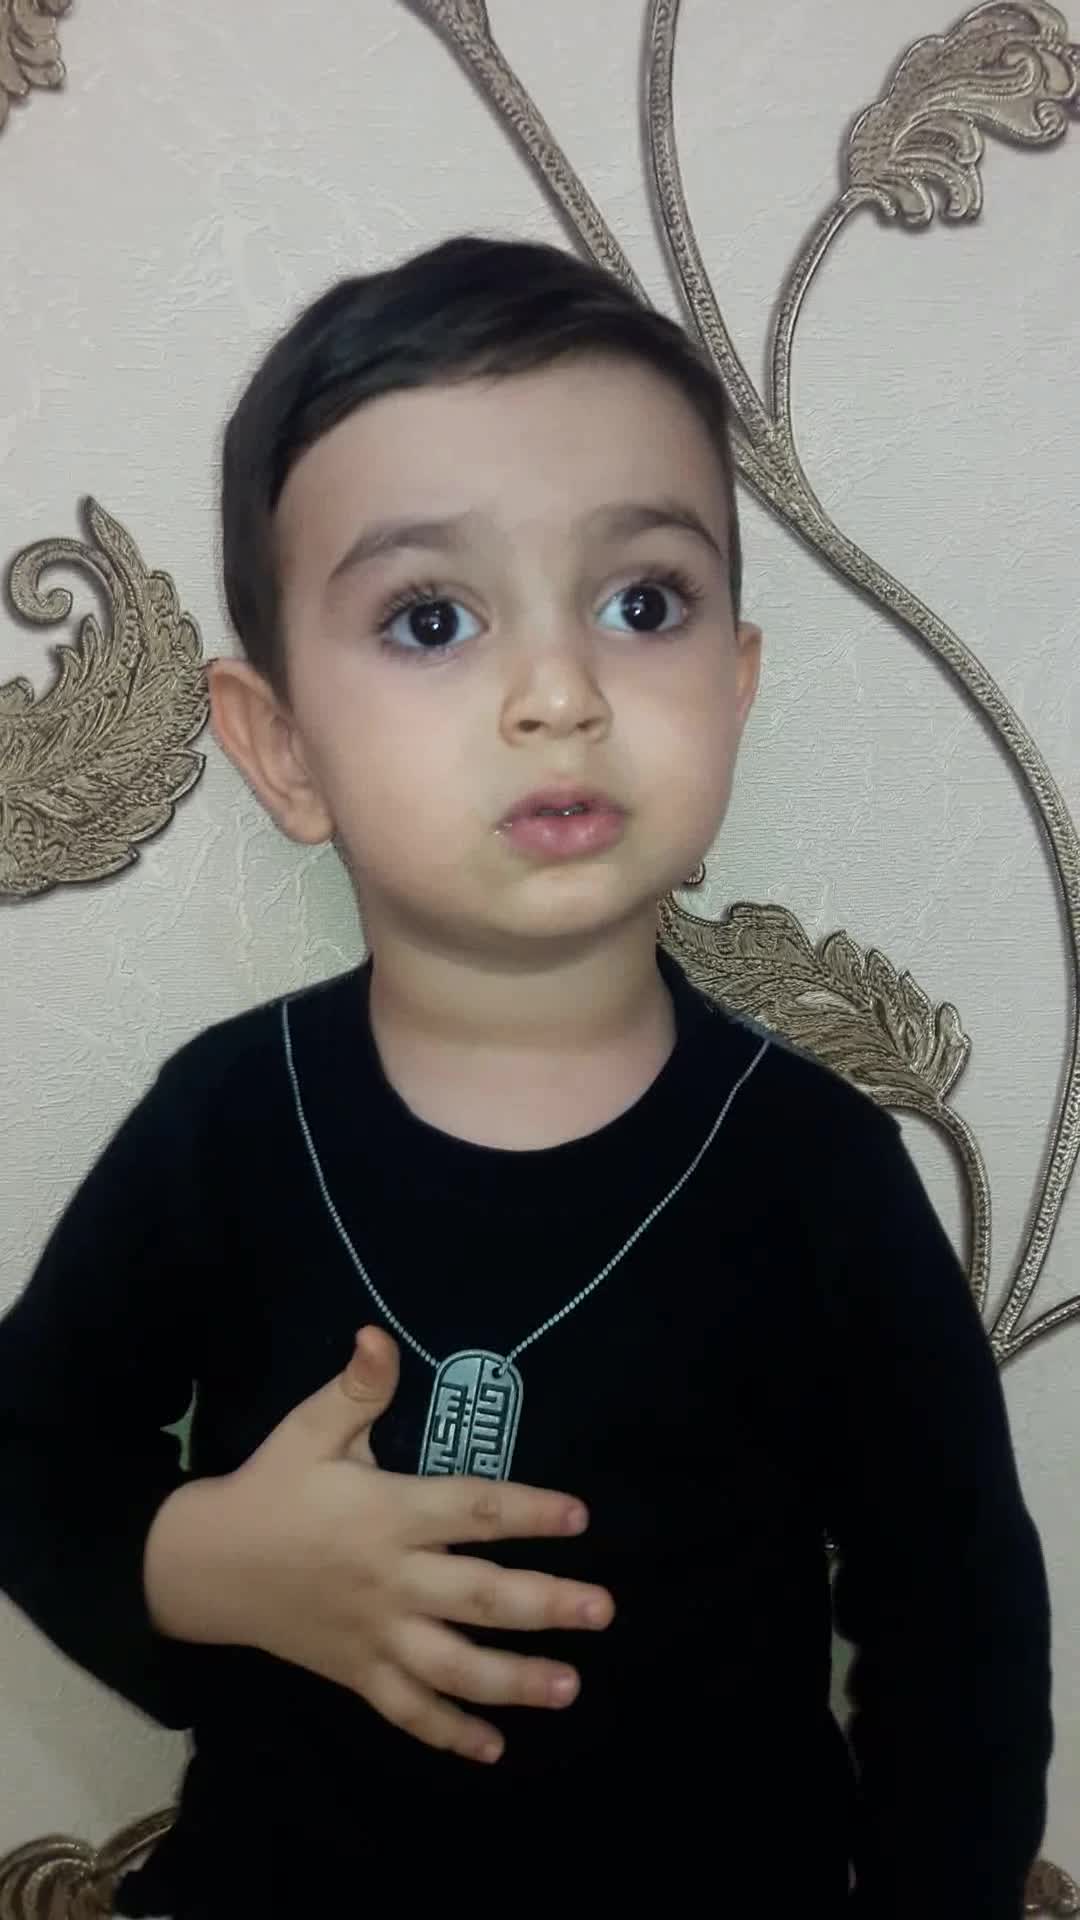 مداحی کودک 2 ساله ، سیدمحمد محمدیان در مورد امام خامنه ای